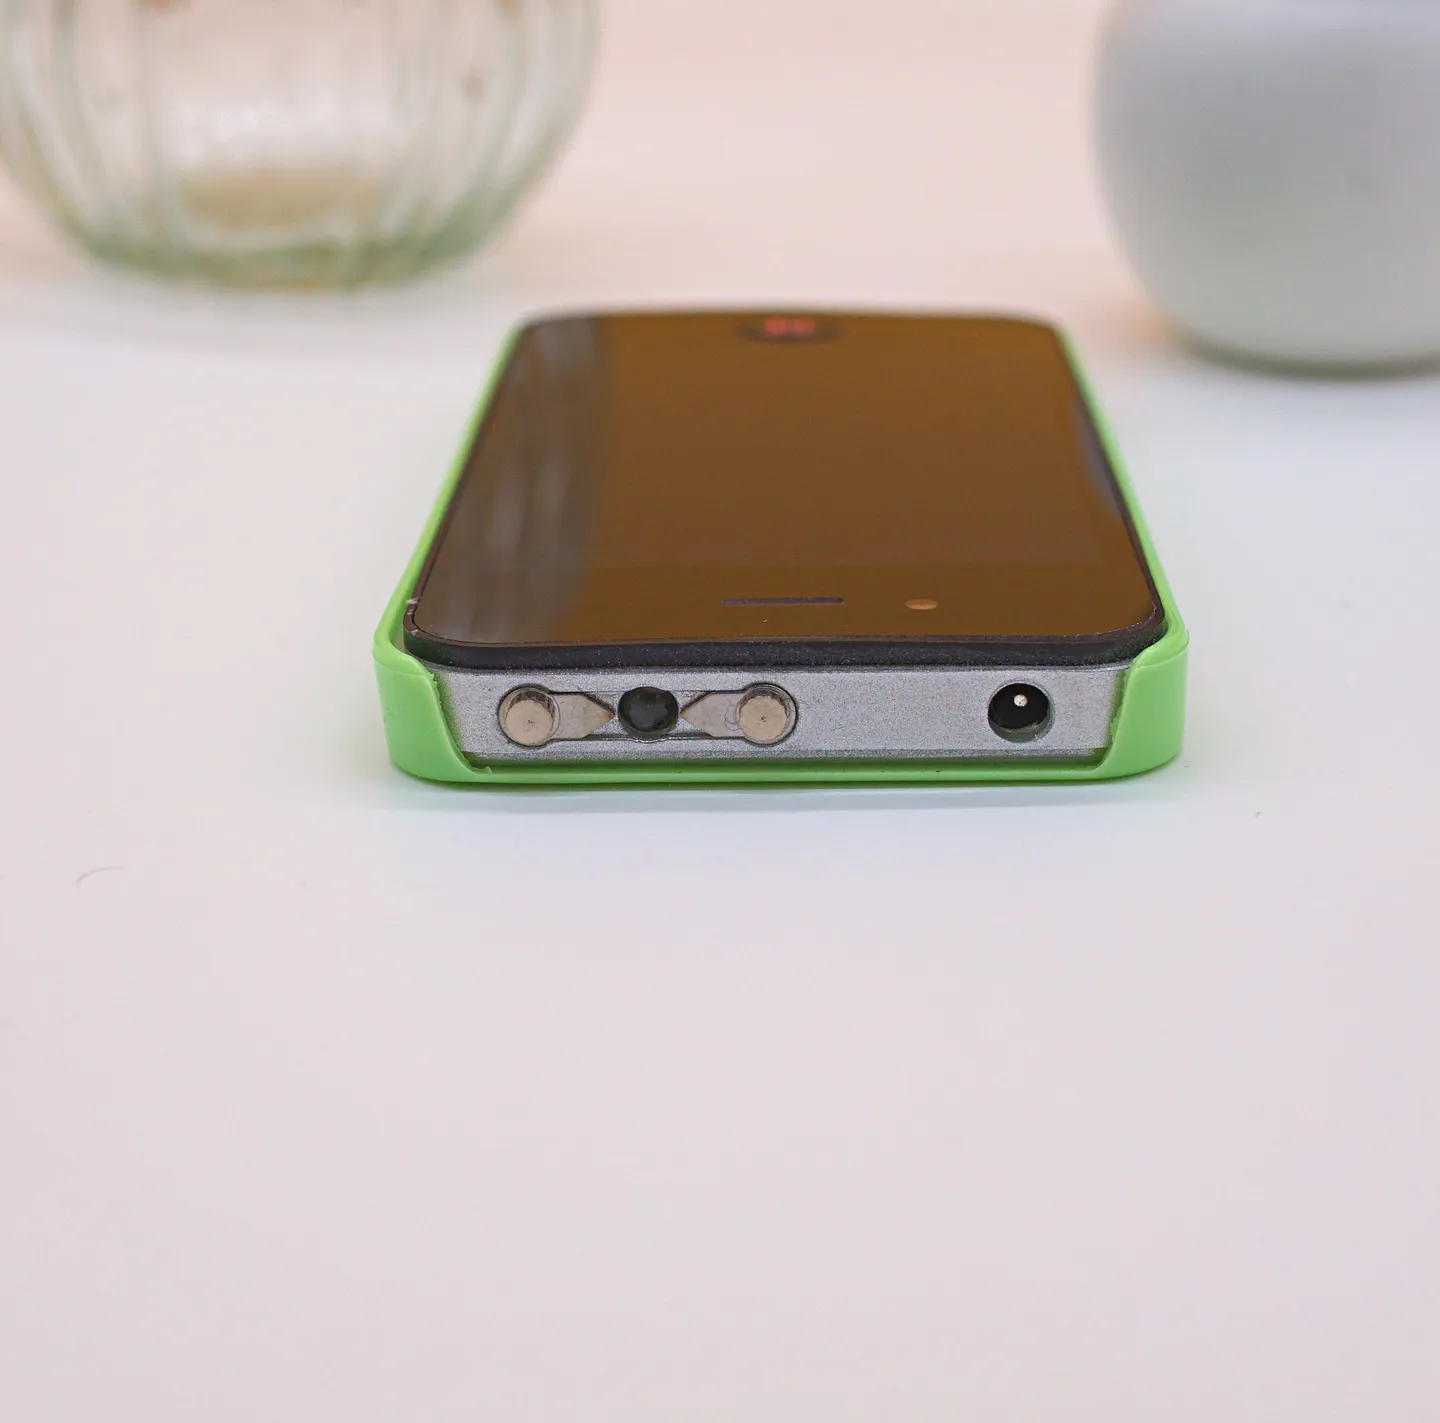 Shocker & Taser - Iphone Shocker Taser, 2.400.000 Volt, proteggiti con discrezione (Versione Verde)